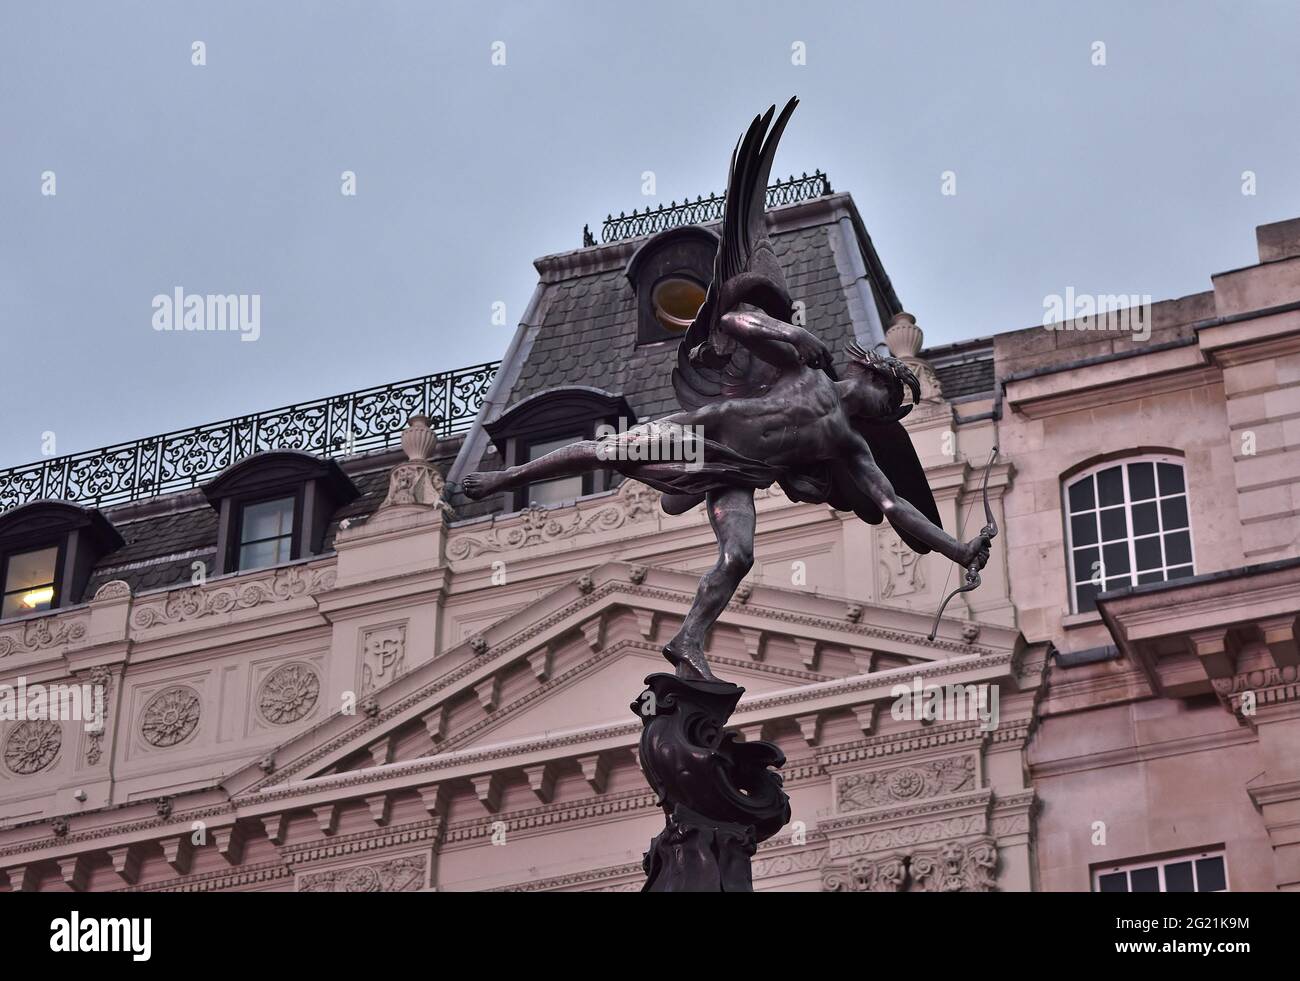 LONDO, REGNO UNITO - 20 agosto 2015: Statua dell'Angelo d'Anteros in cima alla Shaftesbury Memorial Fountain, a Piccadilly Circus, Londra, United Foto Stock